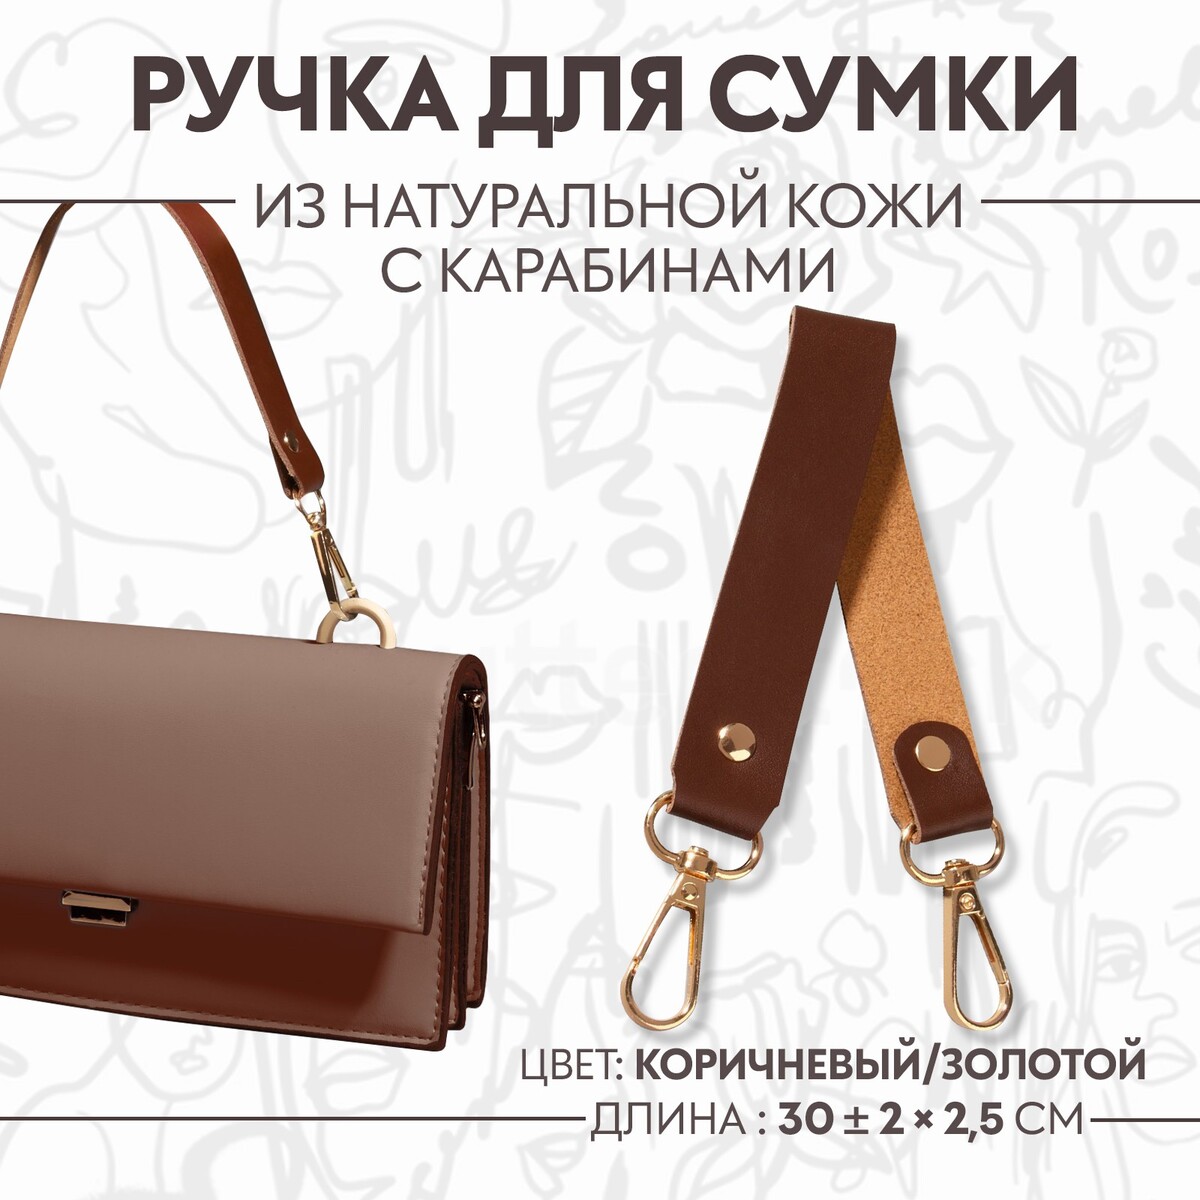 Ручка для сумки из натуральной кожи, с карабинами, 30 ± 2 см × 2,5 см, цвет коричневый/золотой